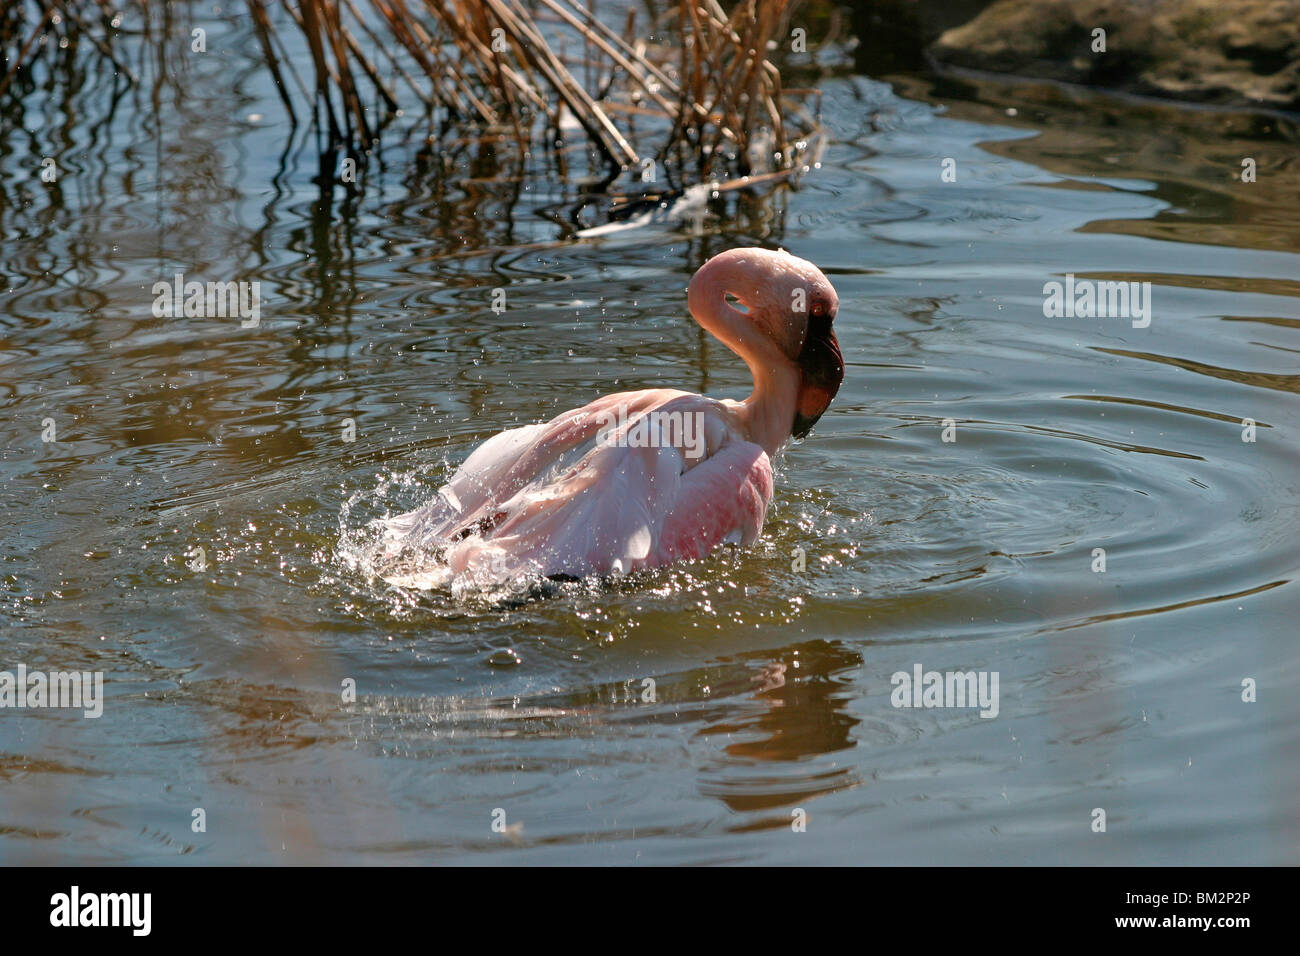 badendet Flamingo / bathing Flamingo Stock Photo